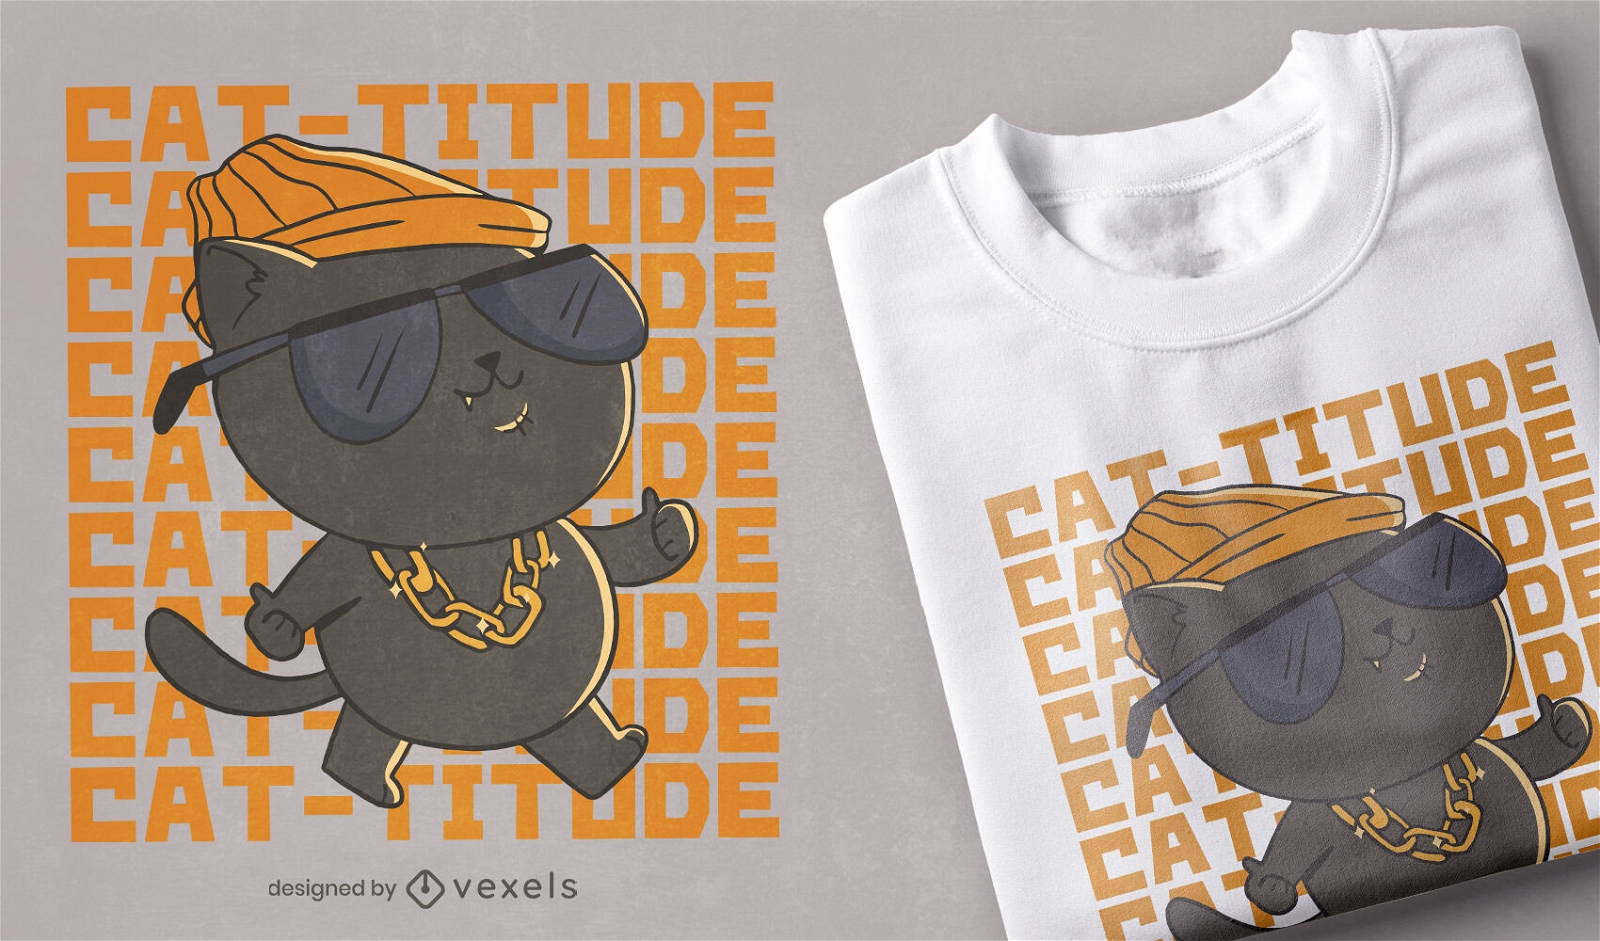 Diseño de camiseta cat-titude cat